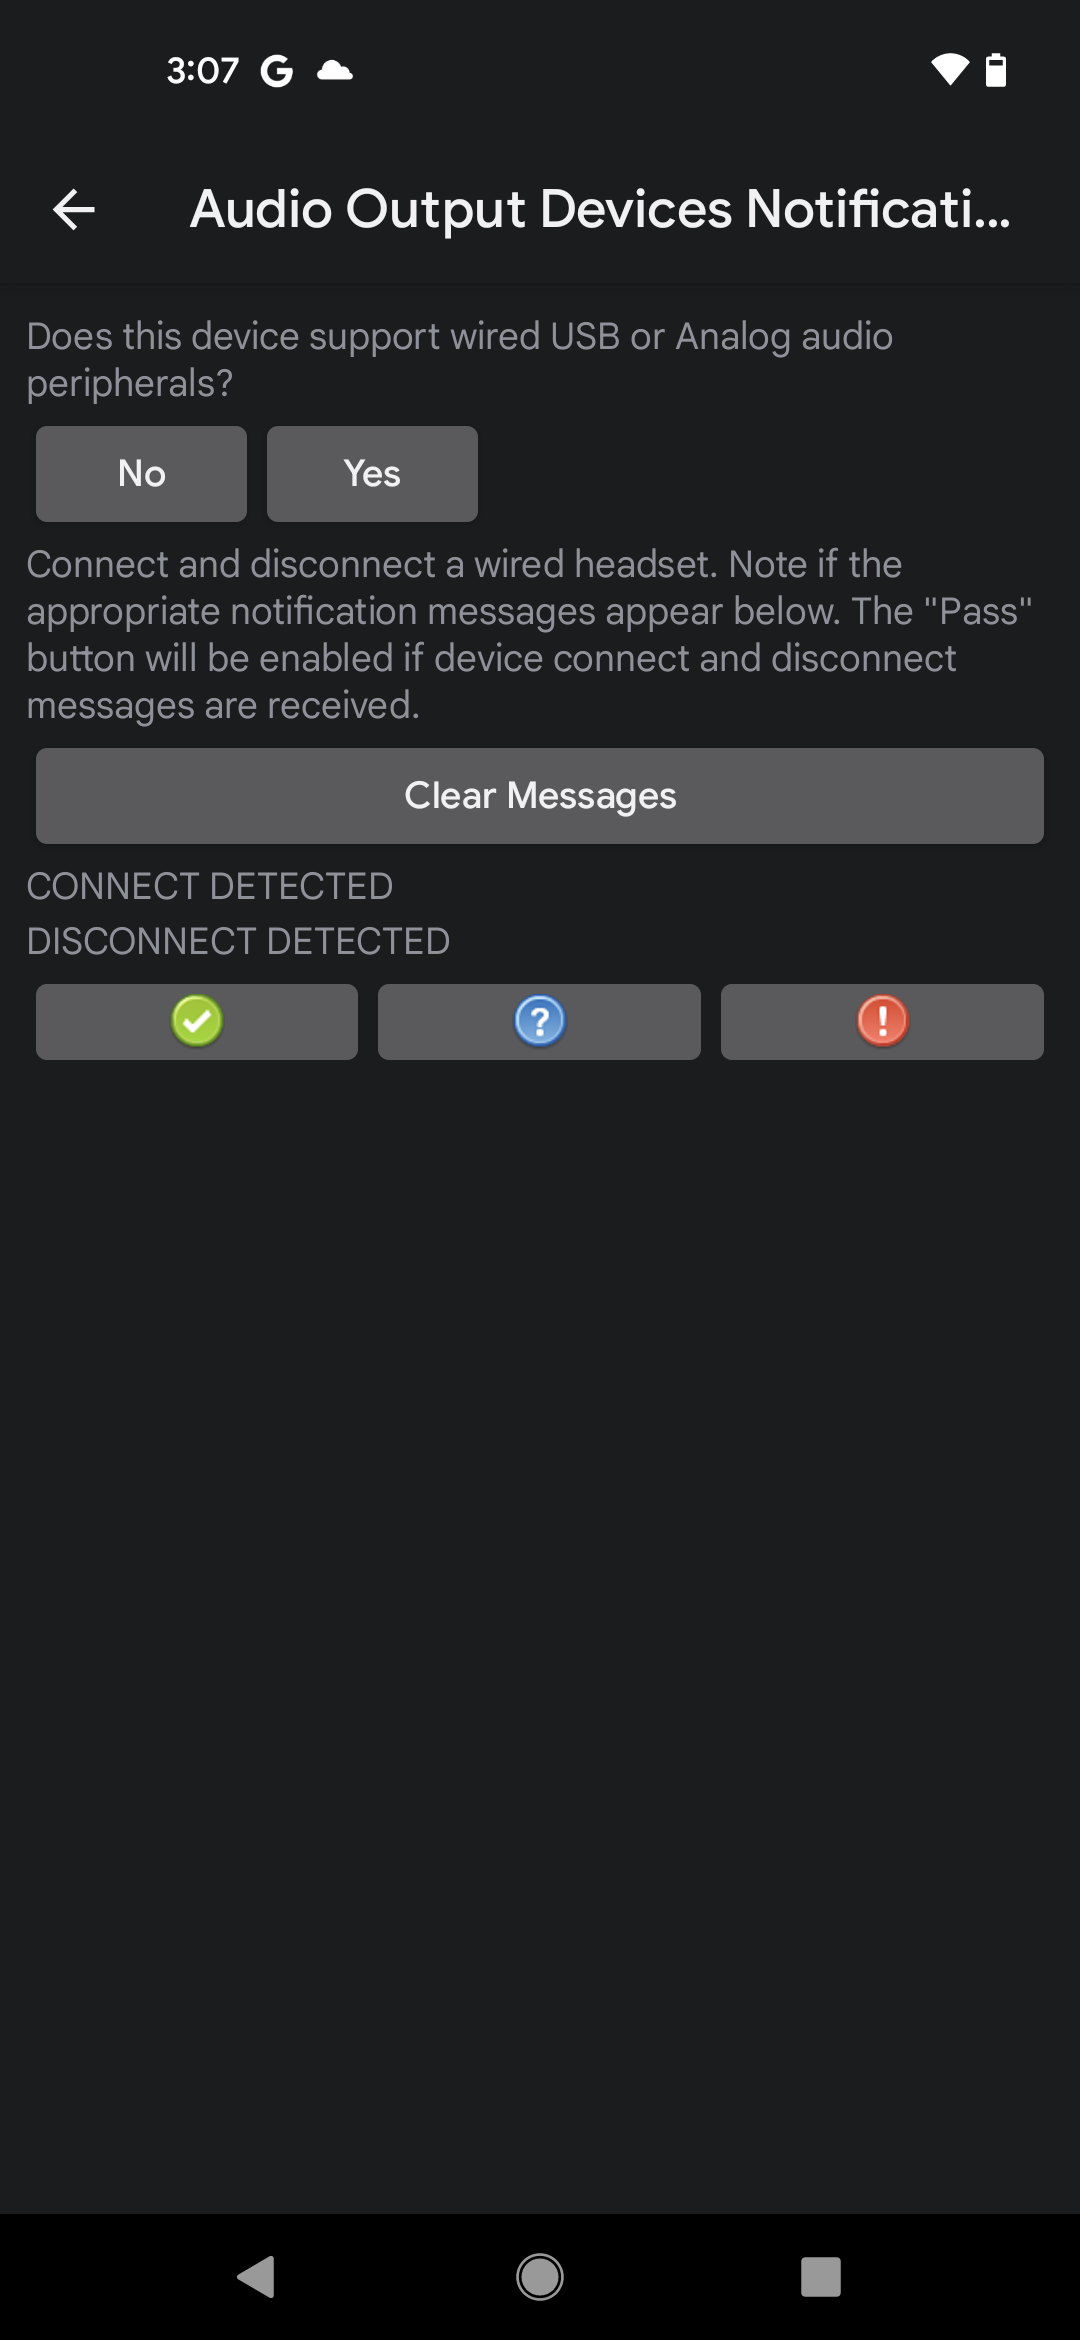 UI de prueba de notificaciones de dispositivos de salida